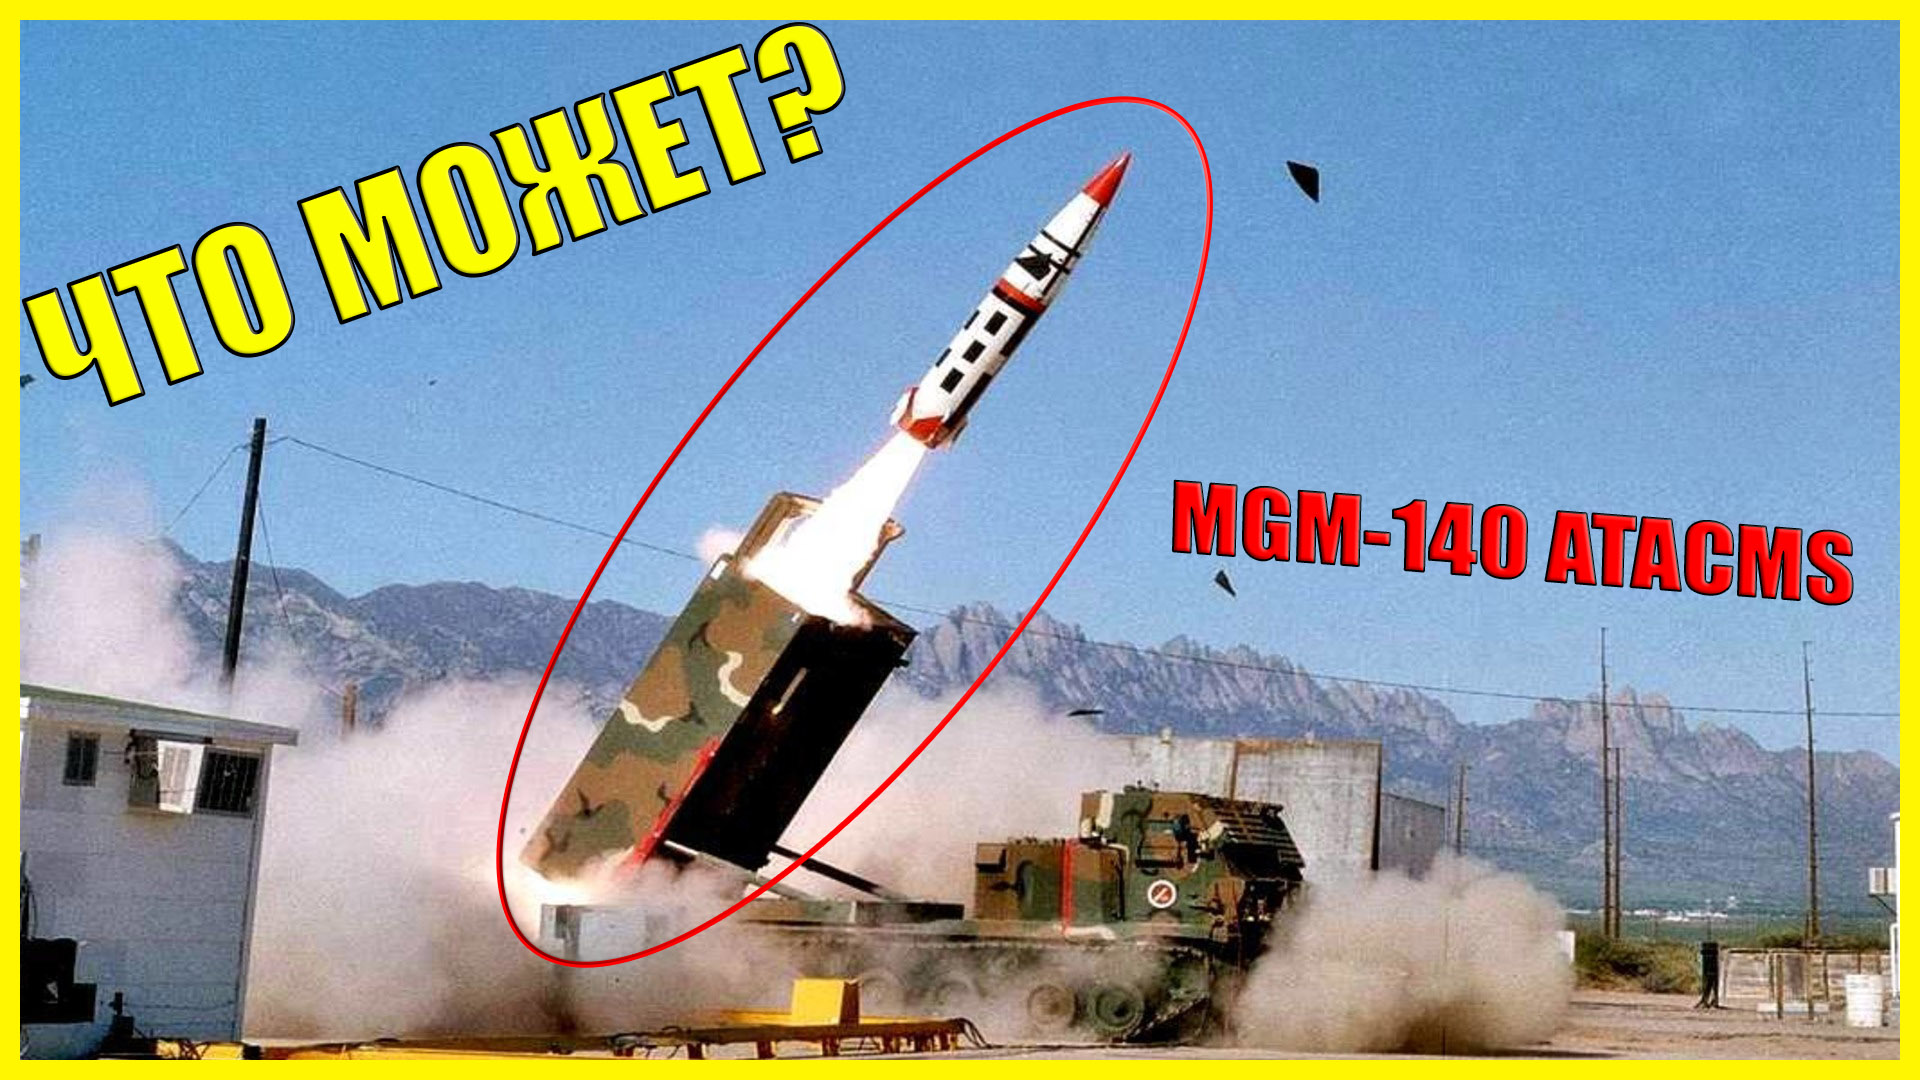 Атакмс характеристики дальность стрельбы. MGM-140 atacms. РСЗО MGM-140 atacms. Оперативно-тактические ракеты MGM-140 atacms. MGM 140 atacms ракета характеристики.